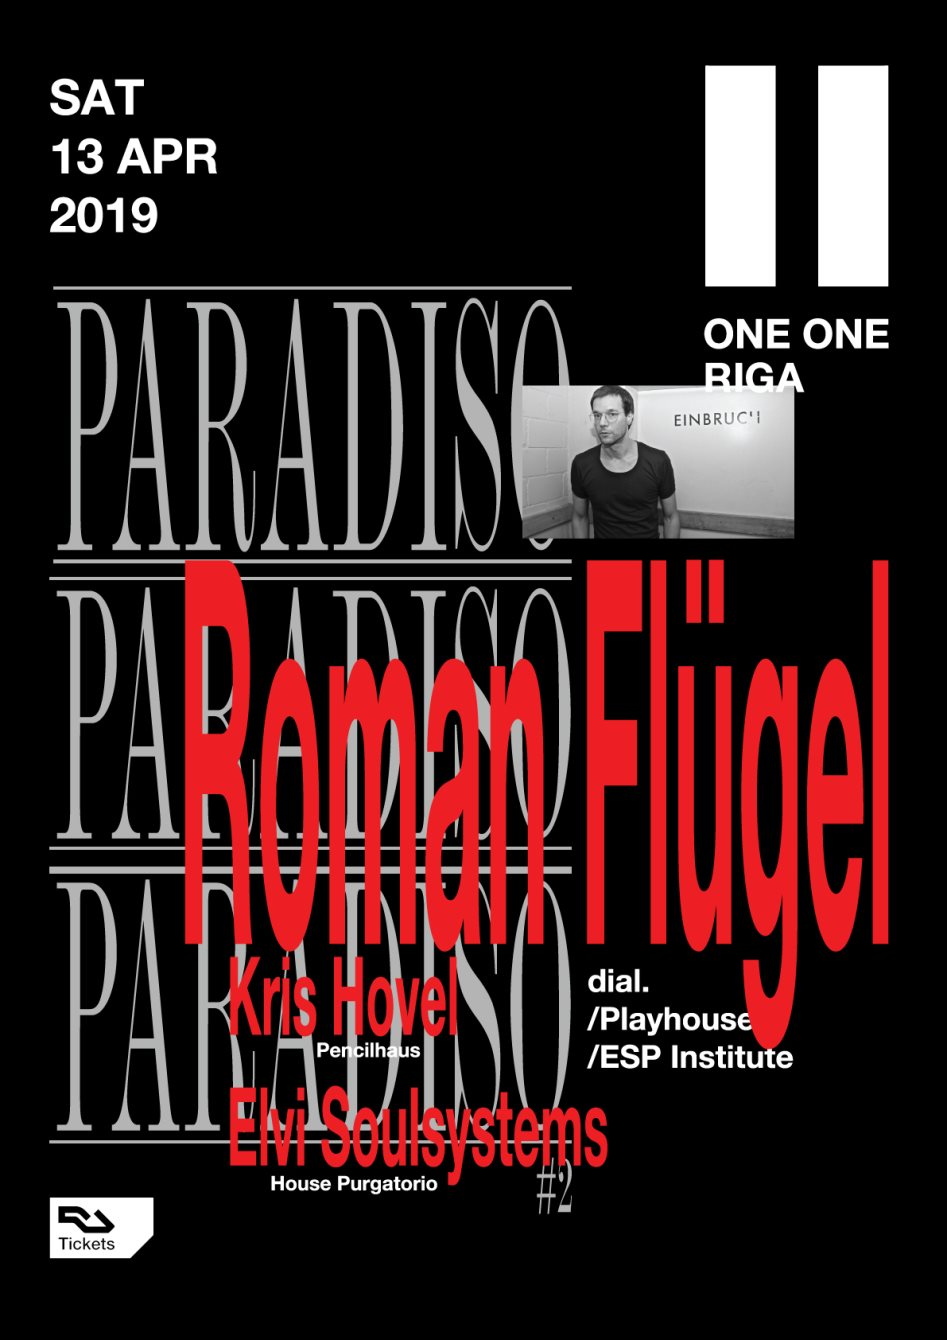 Paradiso: Roman Flügel - Flyer back